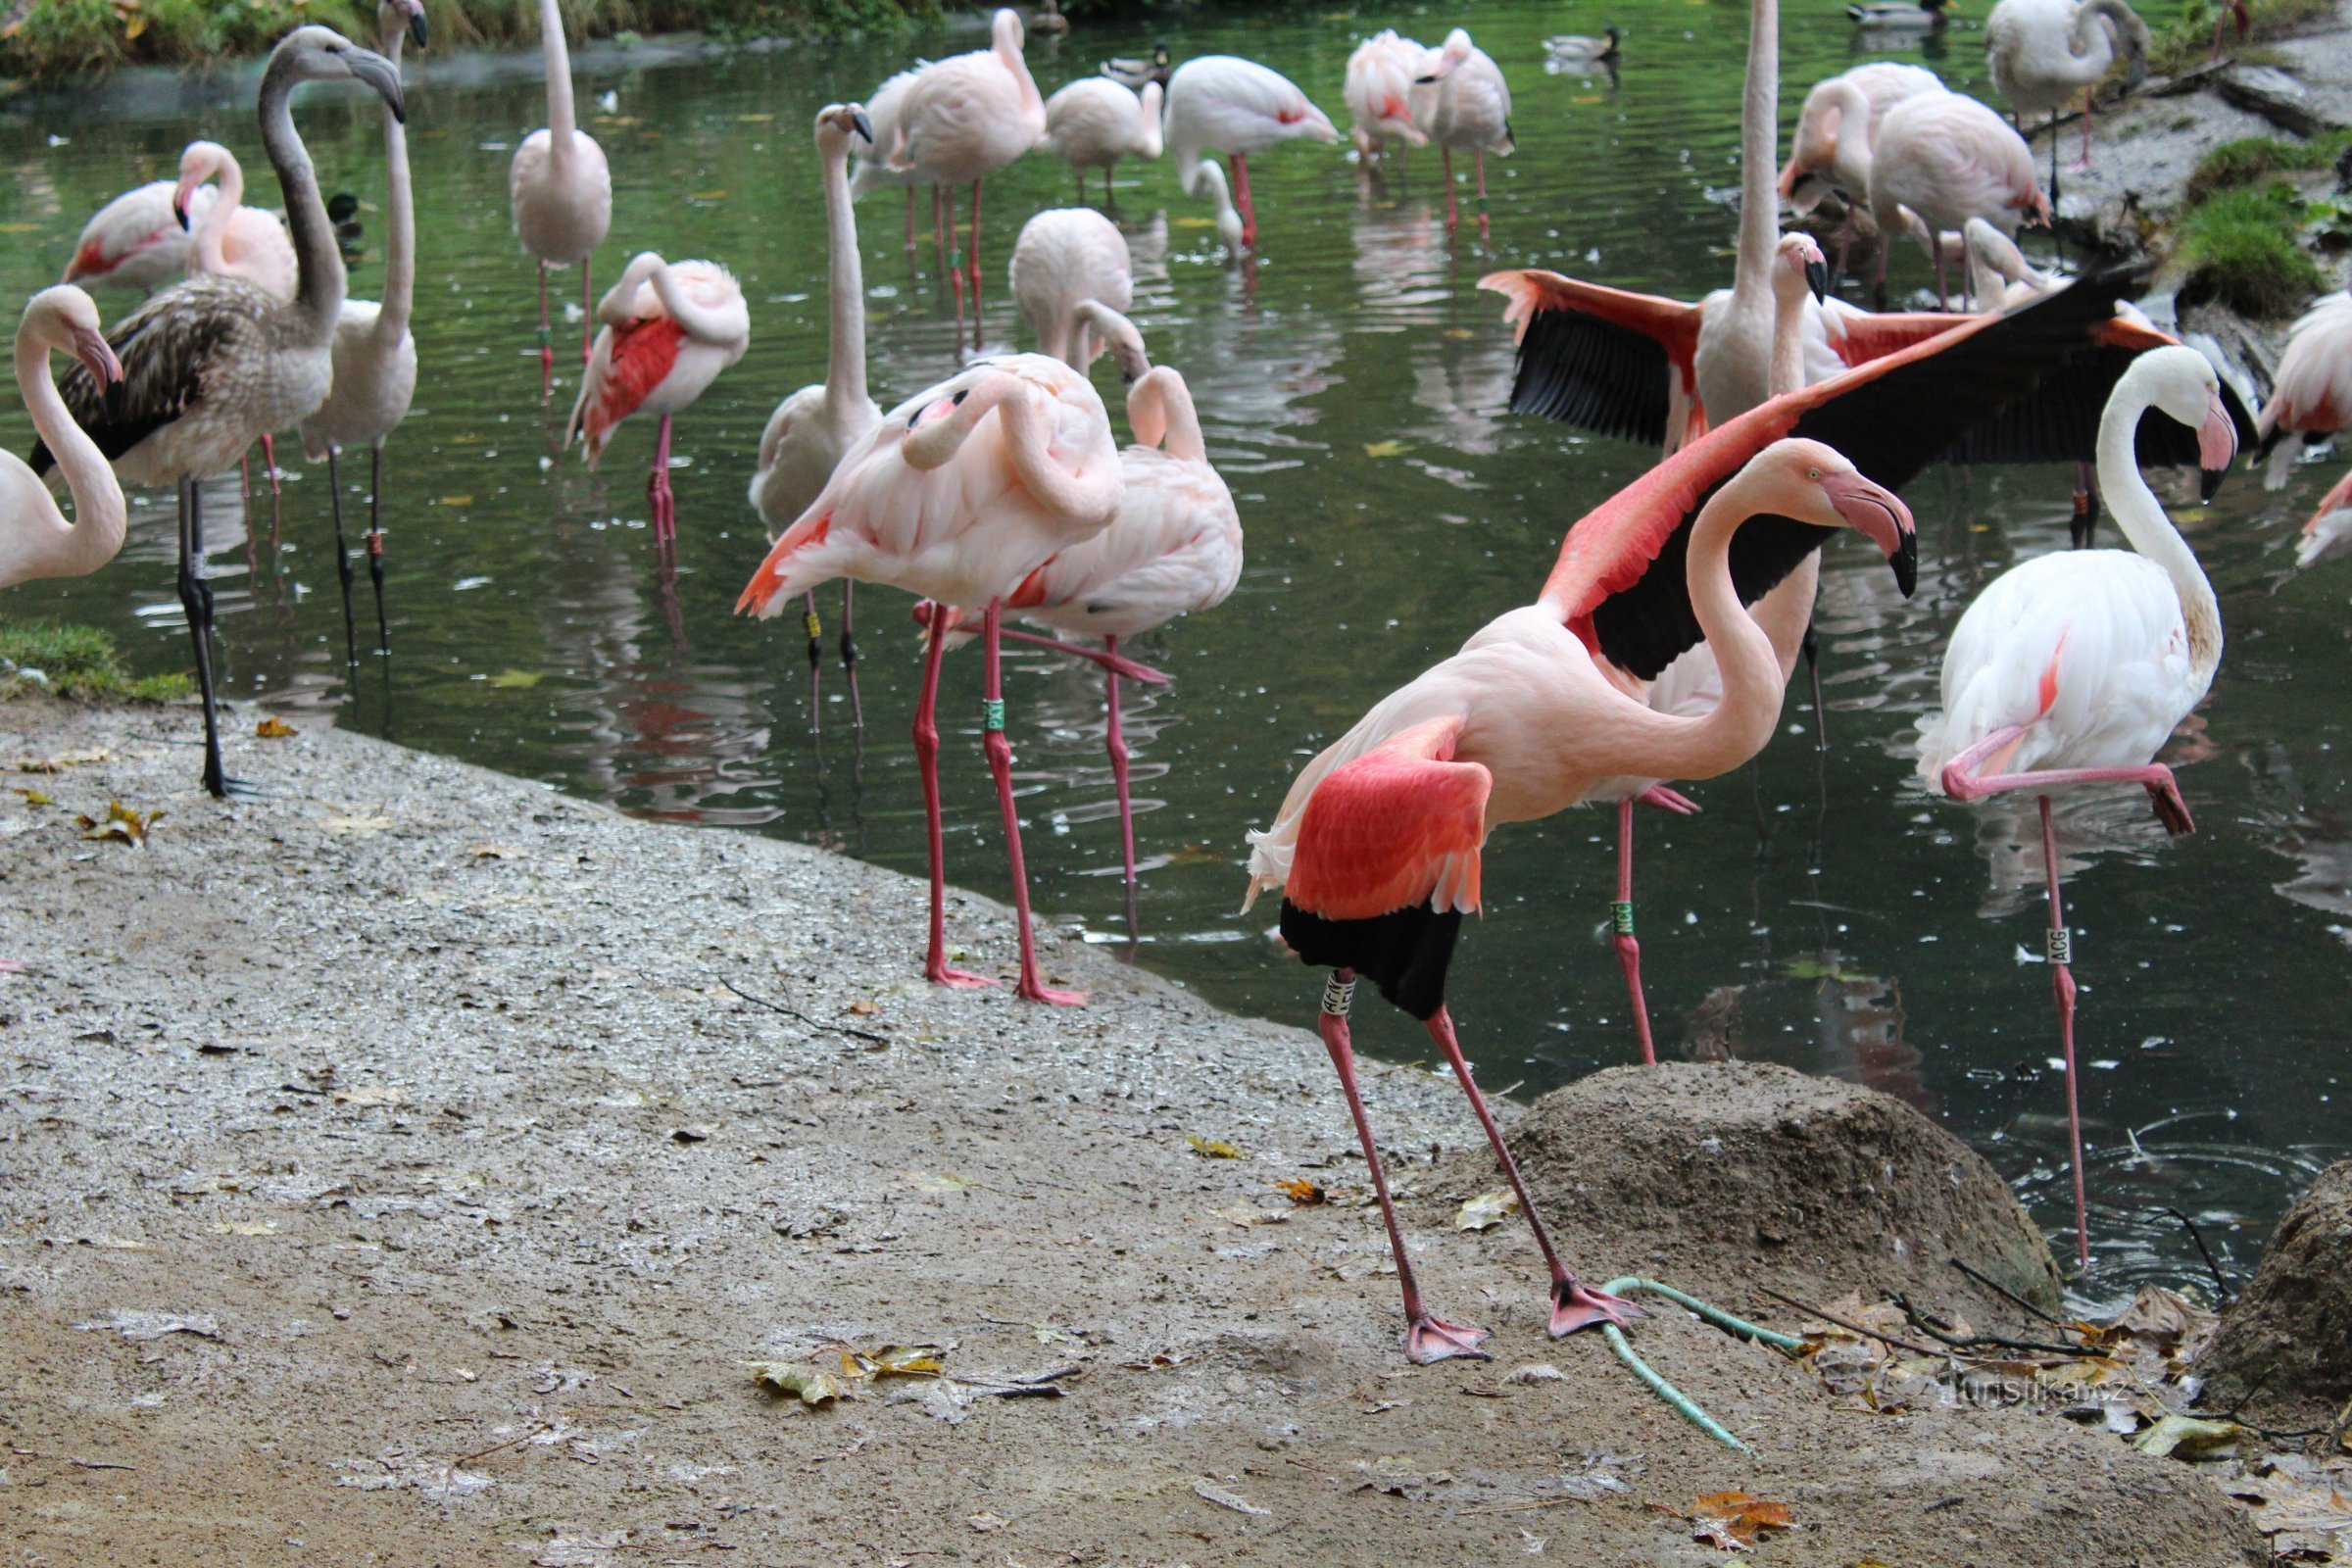 Flamingi - wdzięczne ruchy tych pierzastych zwierząt działają kojąco.